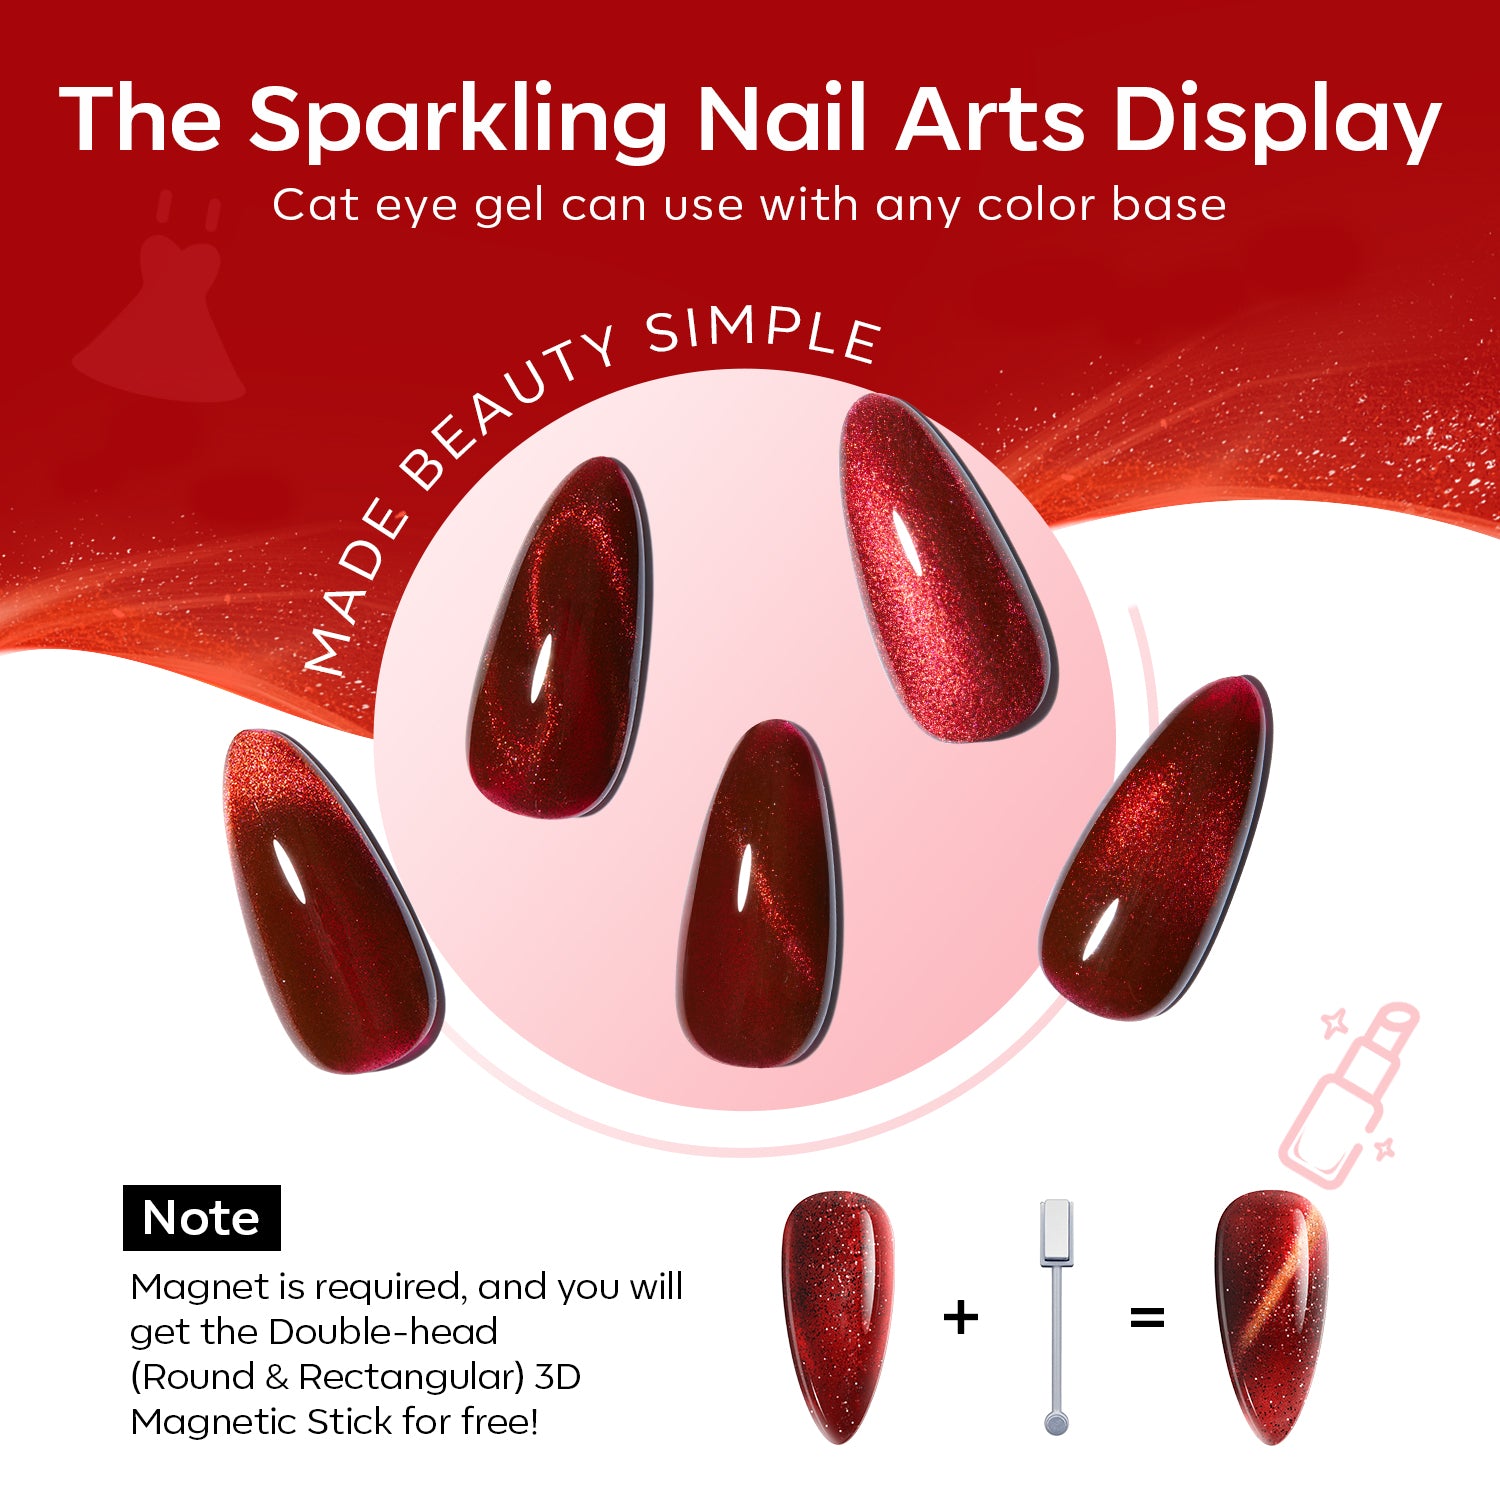 Ruby Sparks - 6 Shades Gel Nail Polish Set【US/CA/AU/EU ONLY】